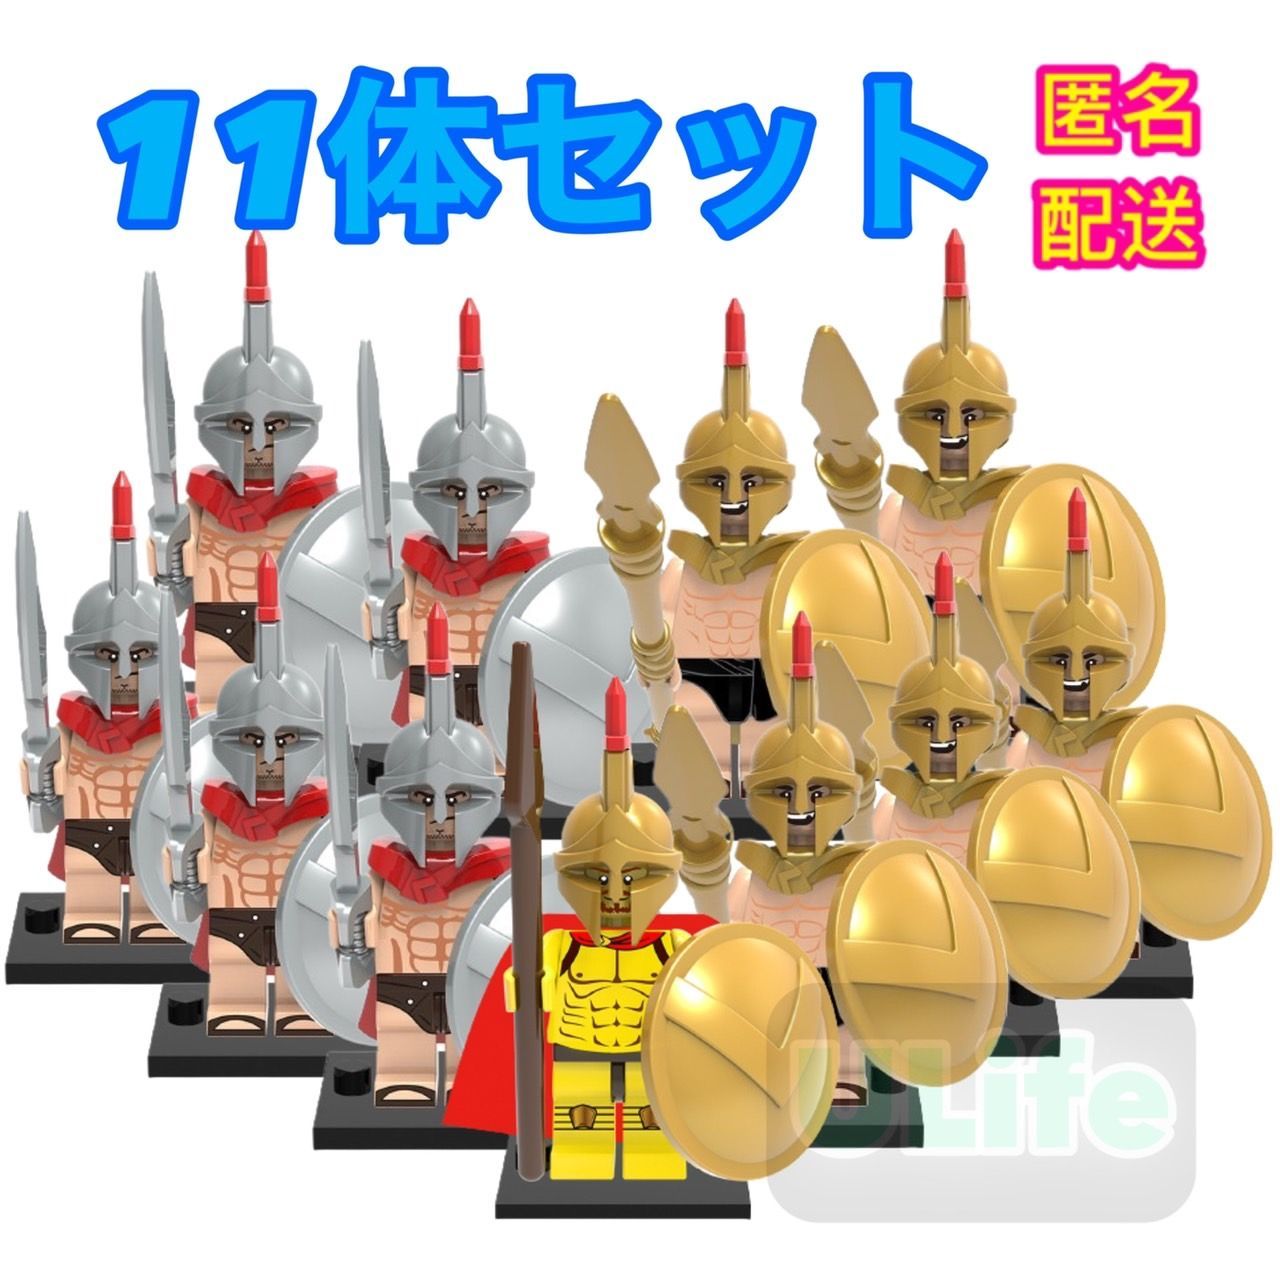 11体4LEGOレゴ互換 古代ローマスパルタクス戦士2種と戦士長騎士団